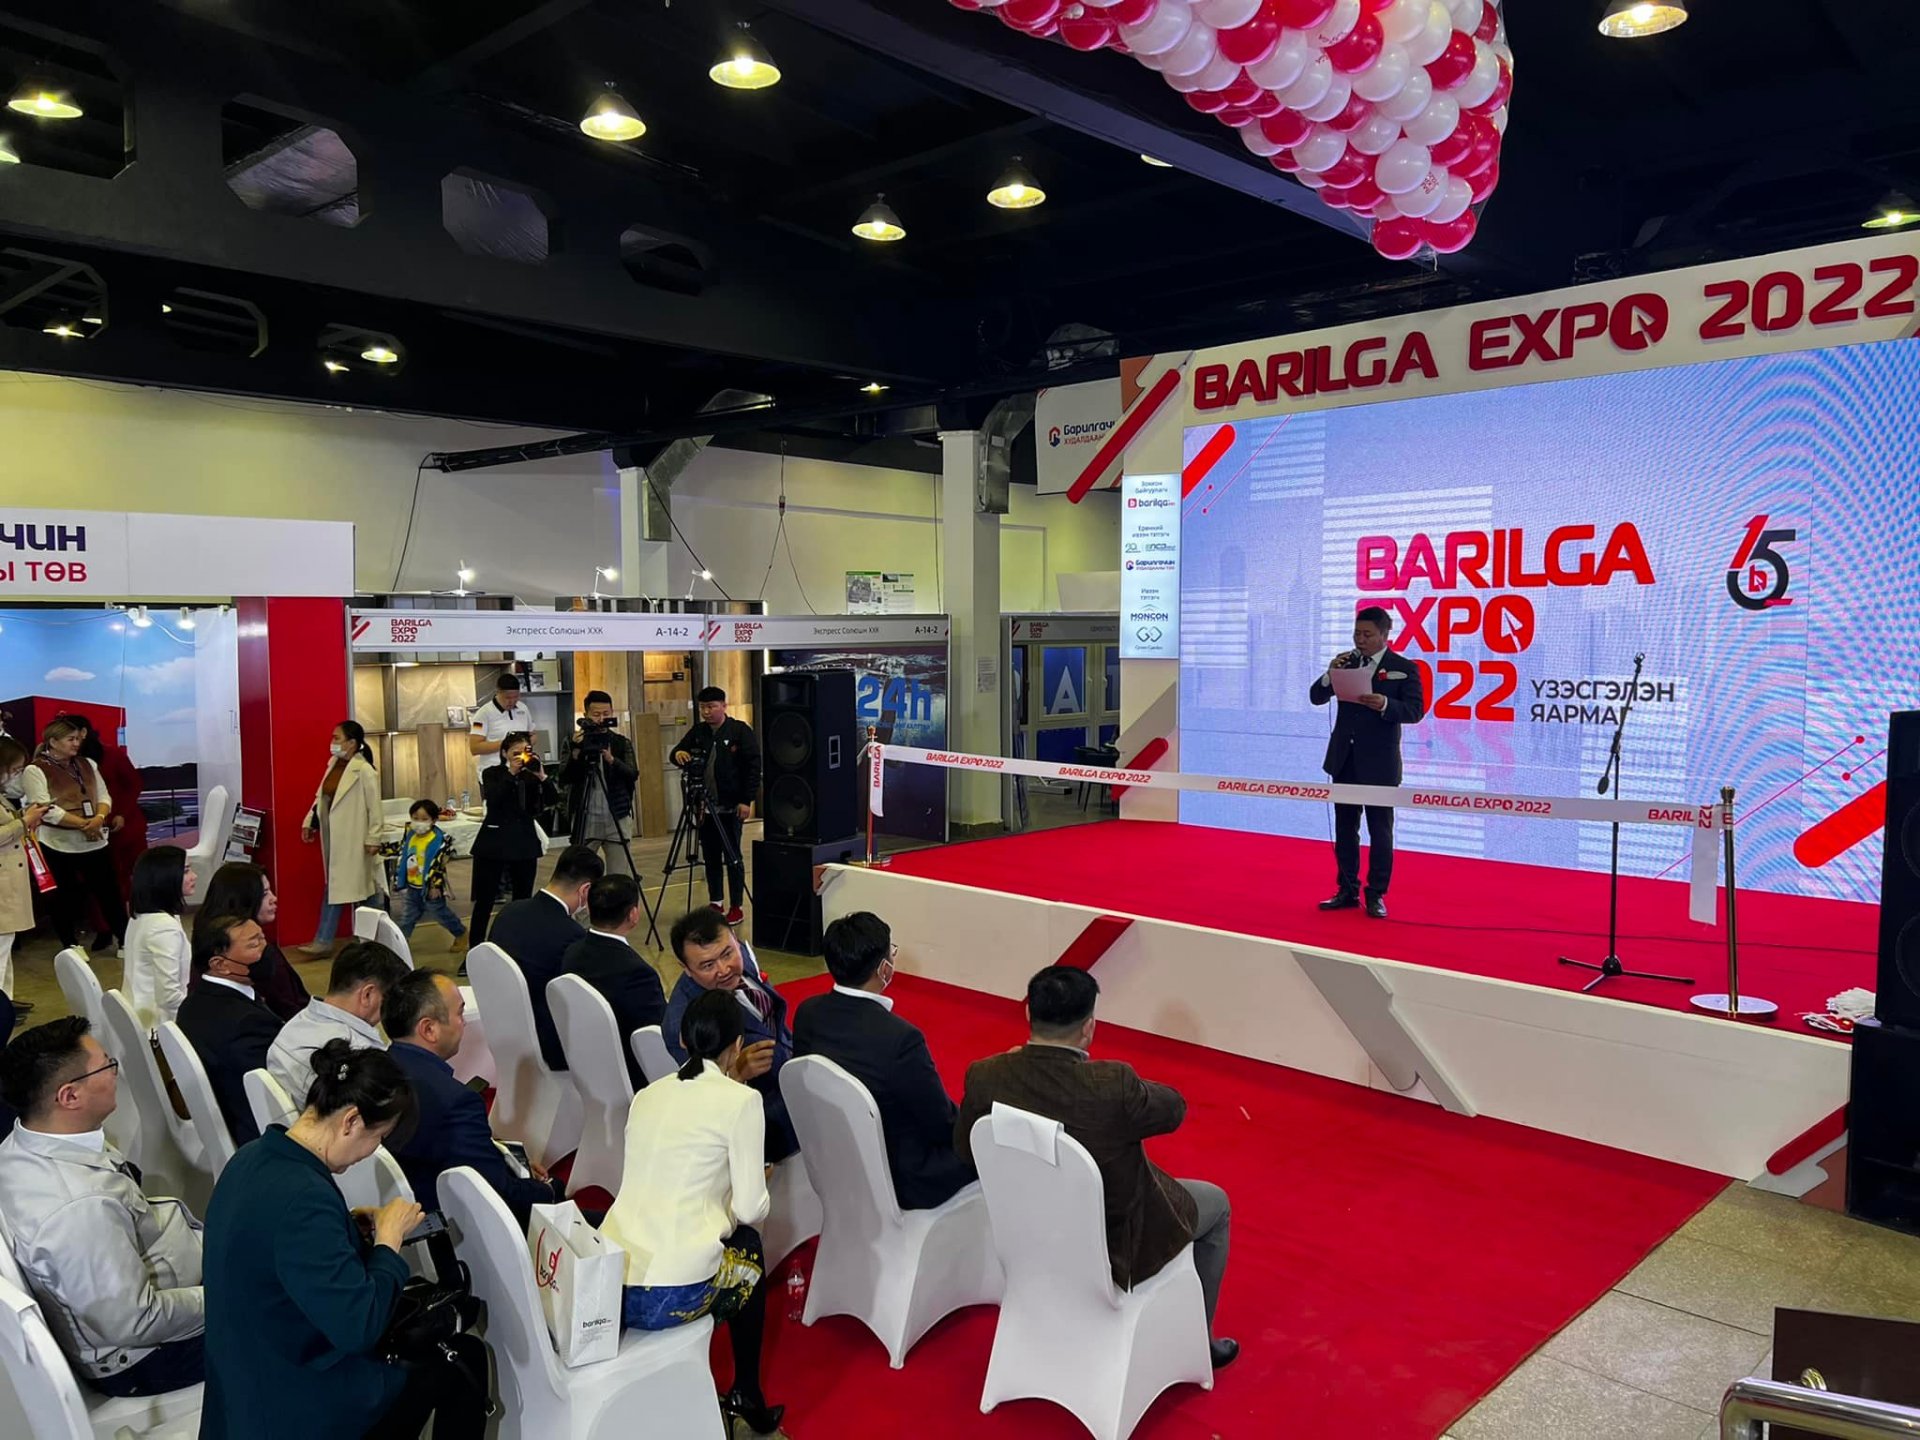 BARILGA EXPO үзэсгэлэнд 11 дэхь жилдээ амжилттай оролцож байна